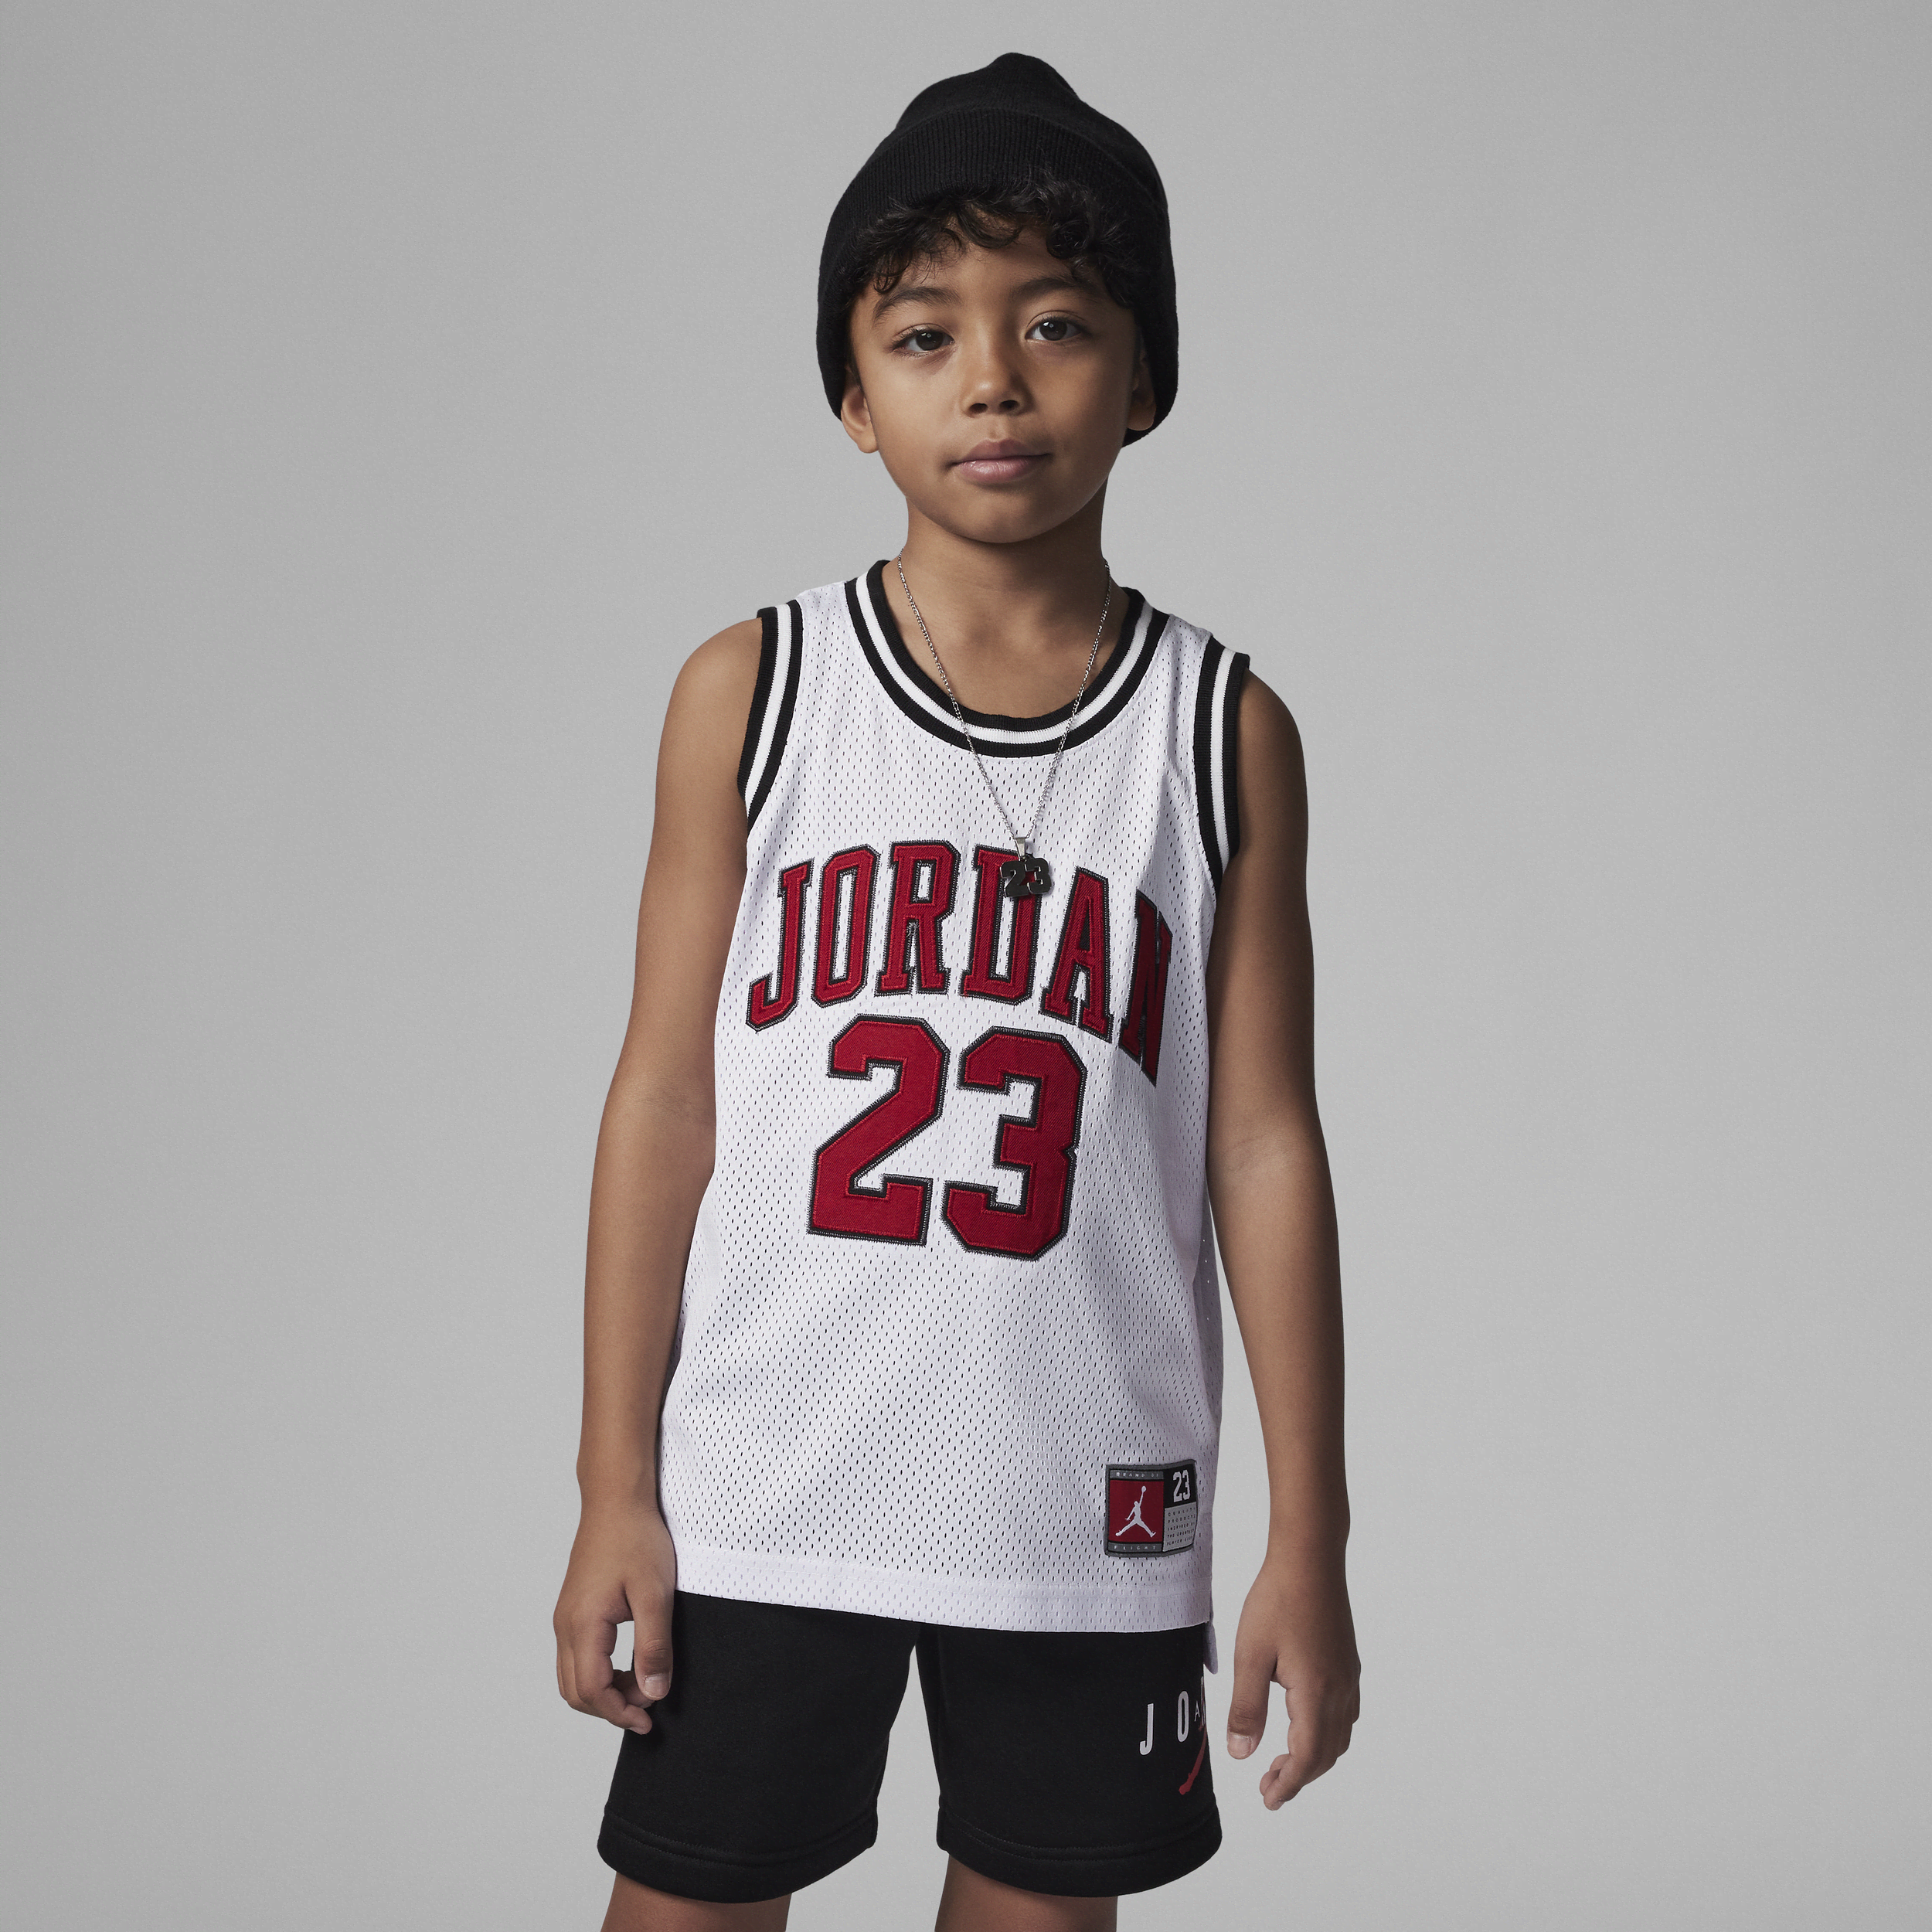 Jordan 23 Jersey Little Kids' Top In White